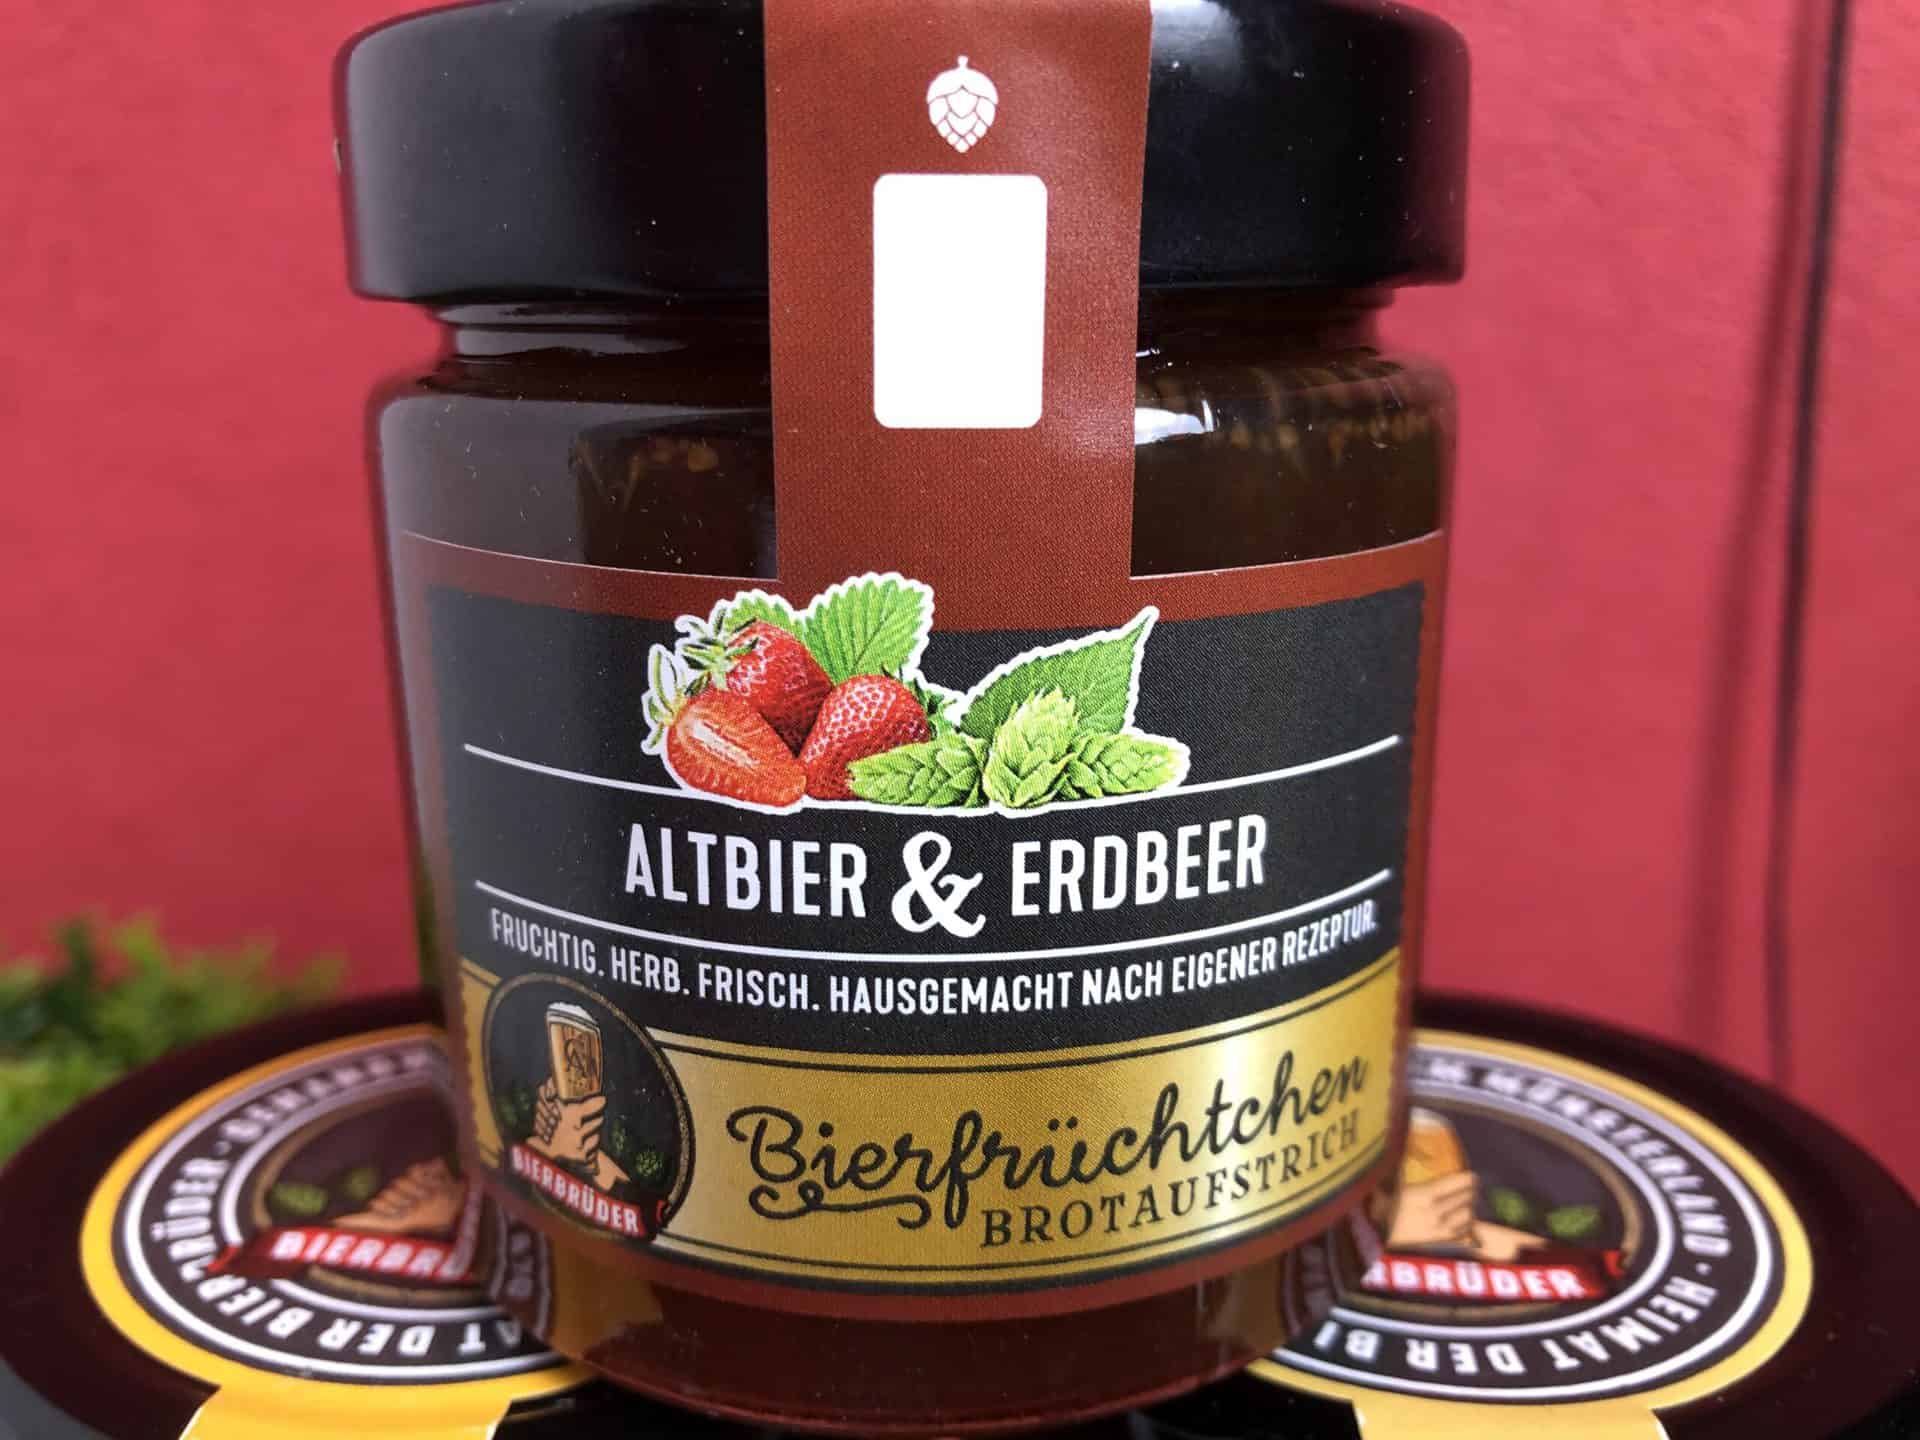 Altbier & Erdbeer Bierfrüchtchen